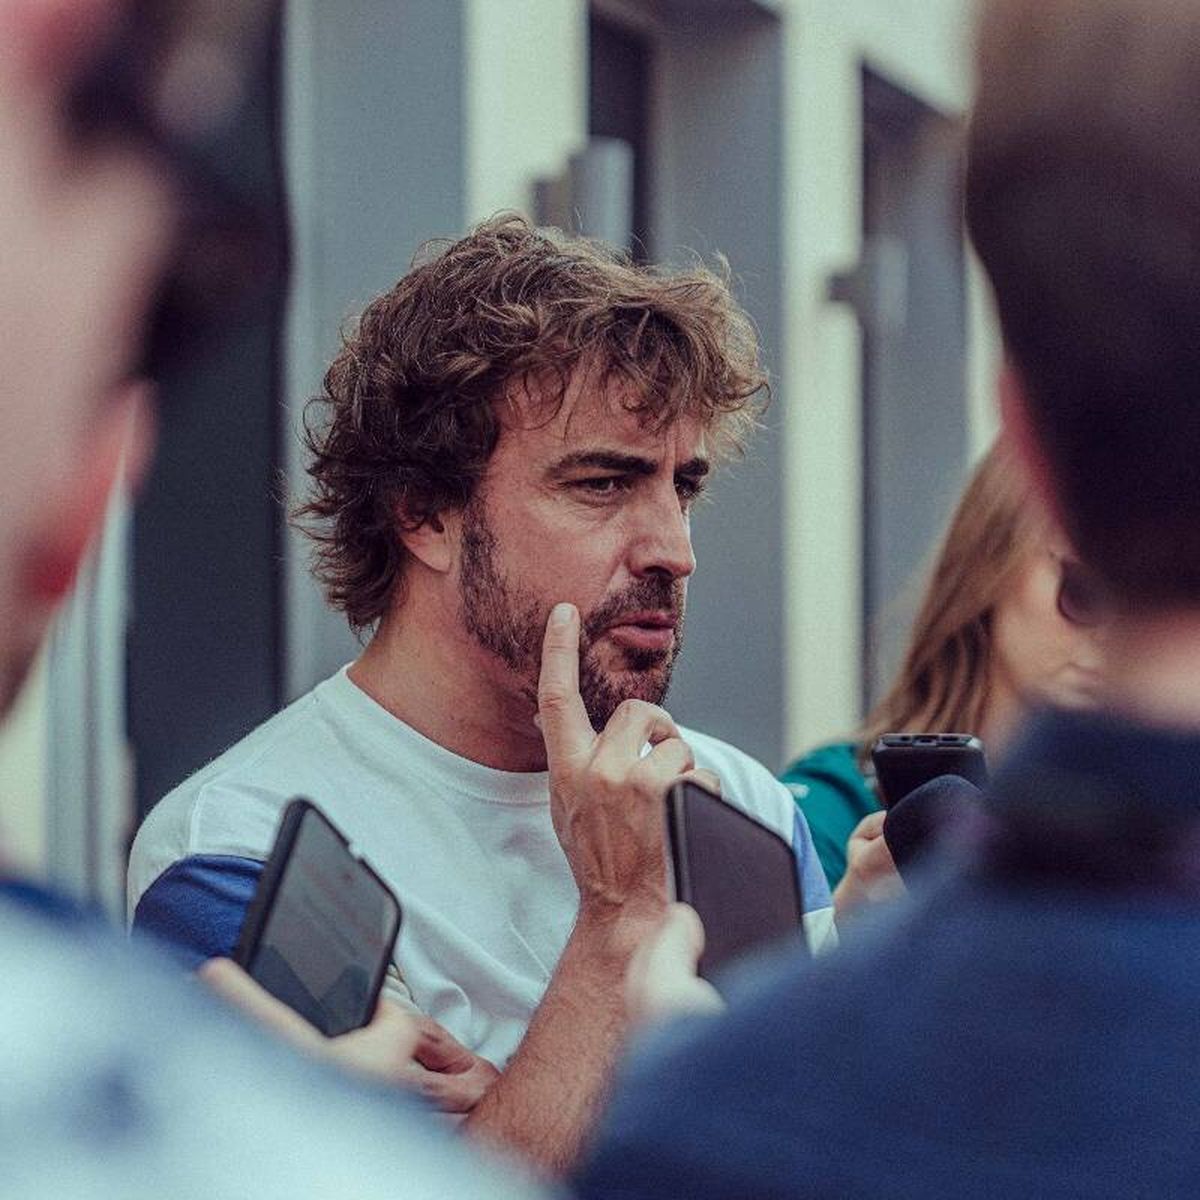 90% nuevo y nada de 'fake' desde el primer día: así será el AMR23 de Fernando  Alonso